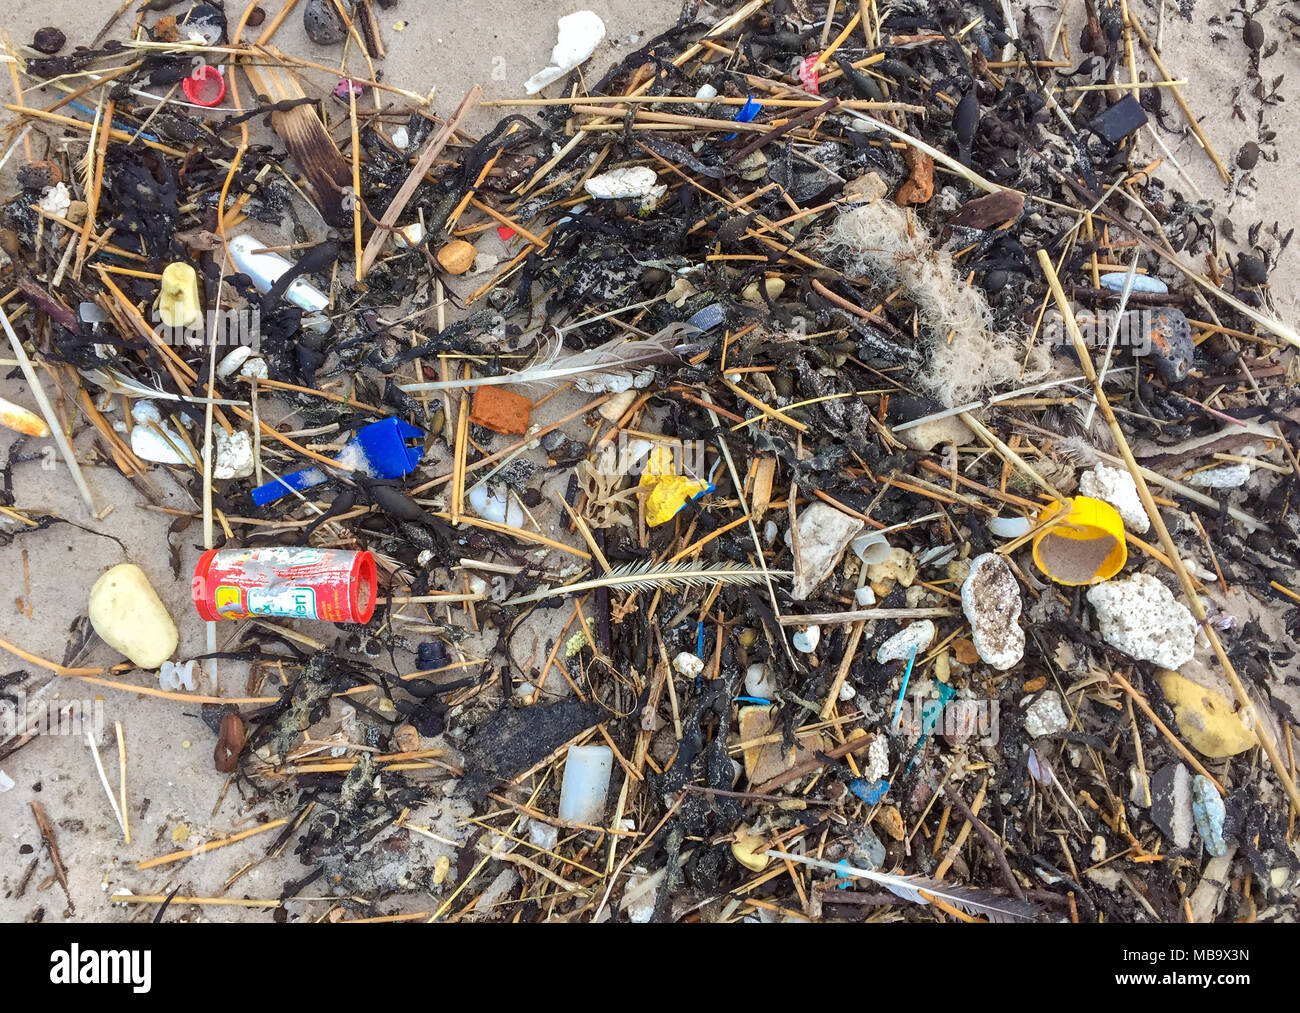 07 de febrero de 2018, Dinamarca, Agger: lavado de residuos de plástico en una playa en el Mar del Norte en la Tu parque nacional. Los científicos estiman que hay más de 100 millones de toneladas de plástico en los océanos. Lentamente se descompone en pequeños fragmentos, que organismos marinos consumir con alimentos. En el océano, plástico dura un tiempo muy largo, a menudo durante varios siglos. Una botella de plástico tarda 450 años en descomponerse por completo. Uso | en todo el mundo Foto de stock